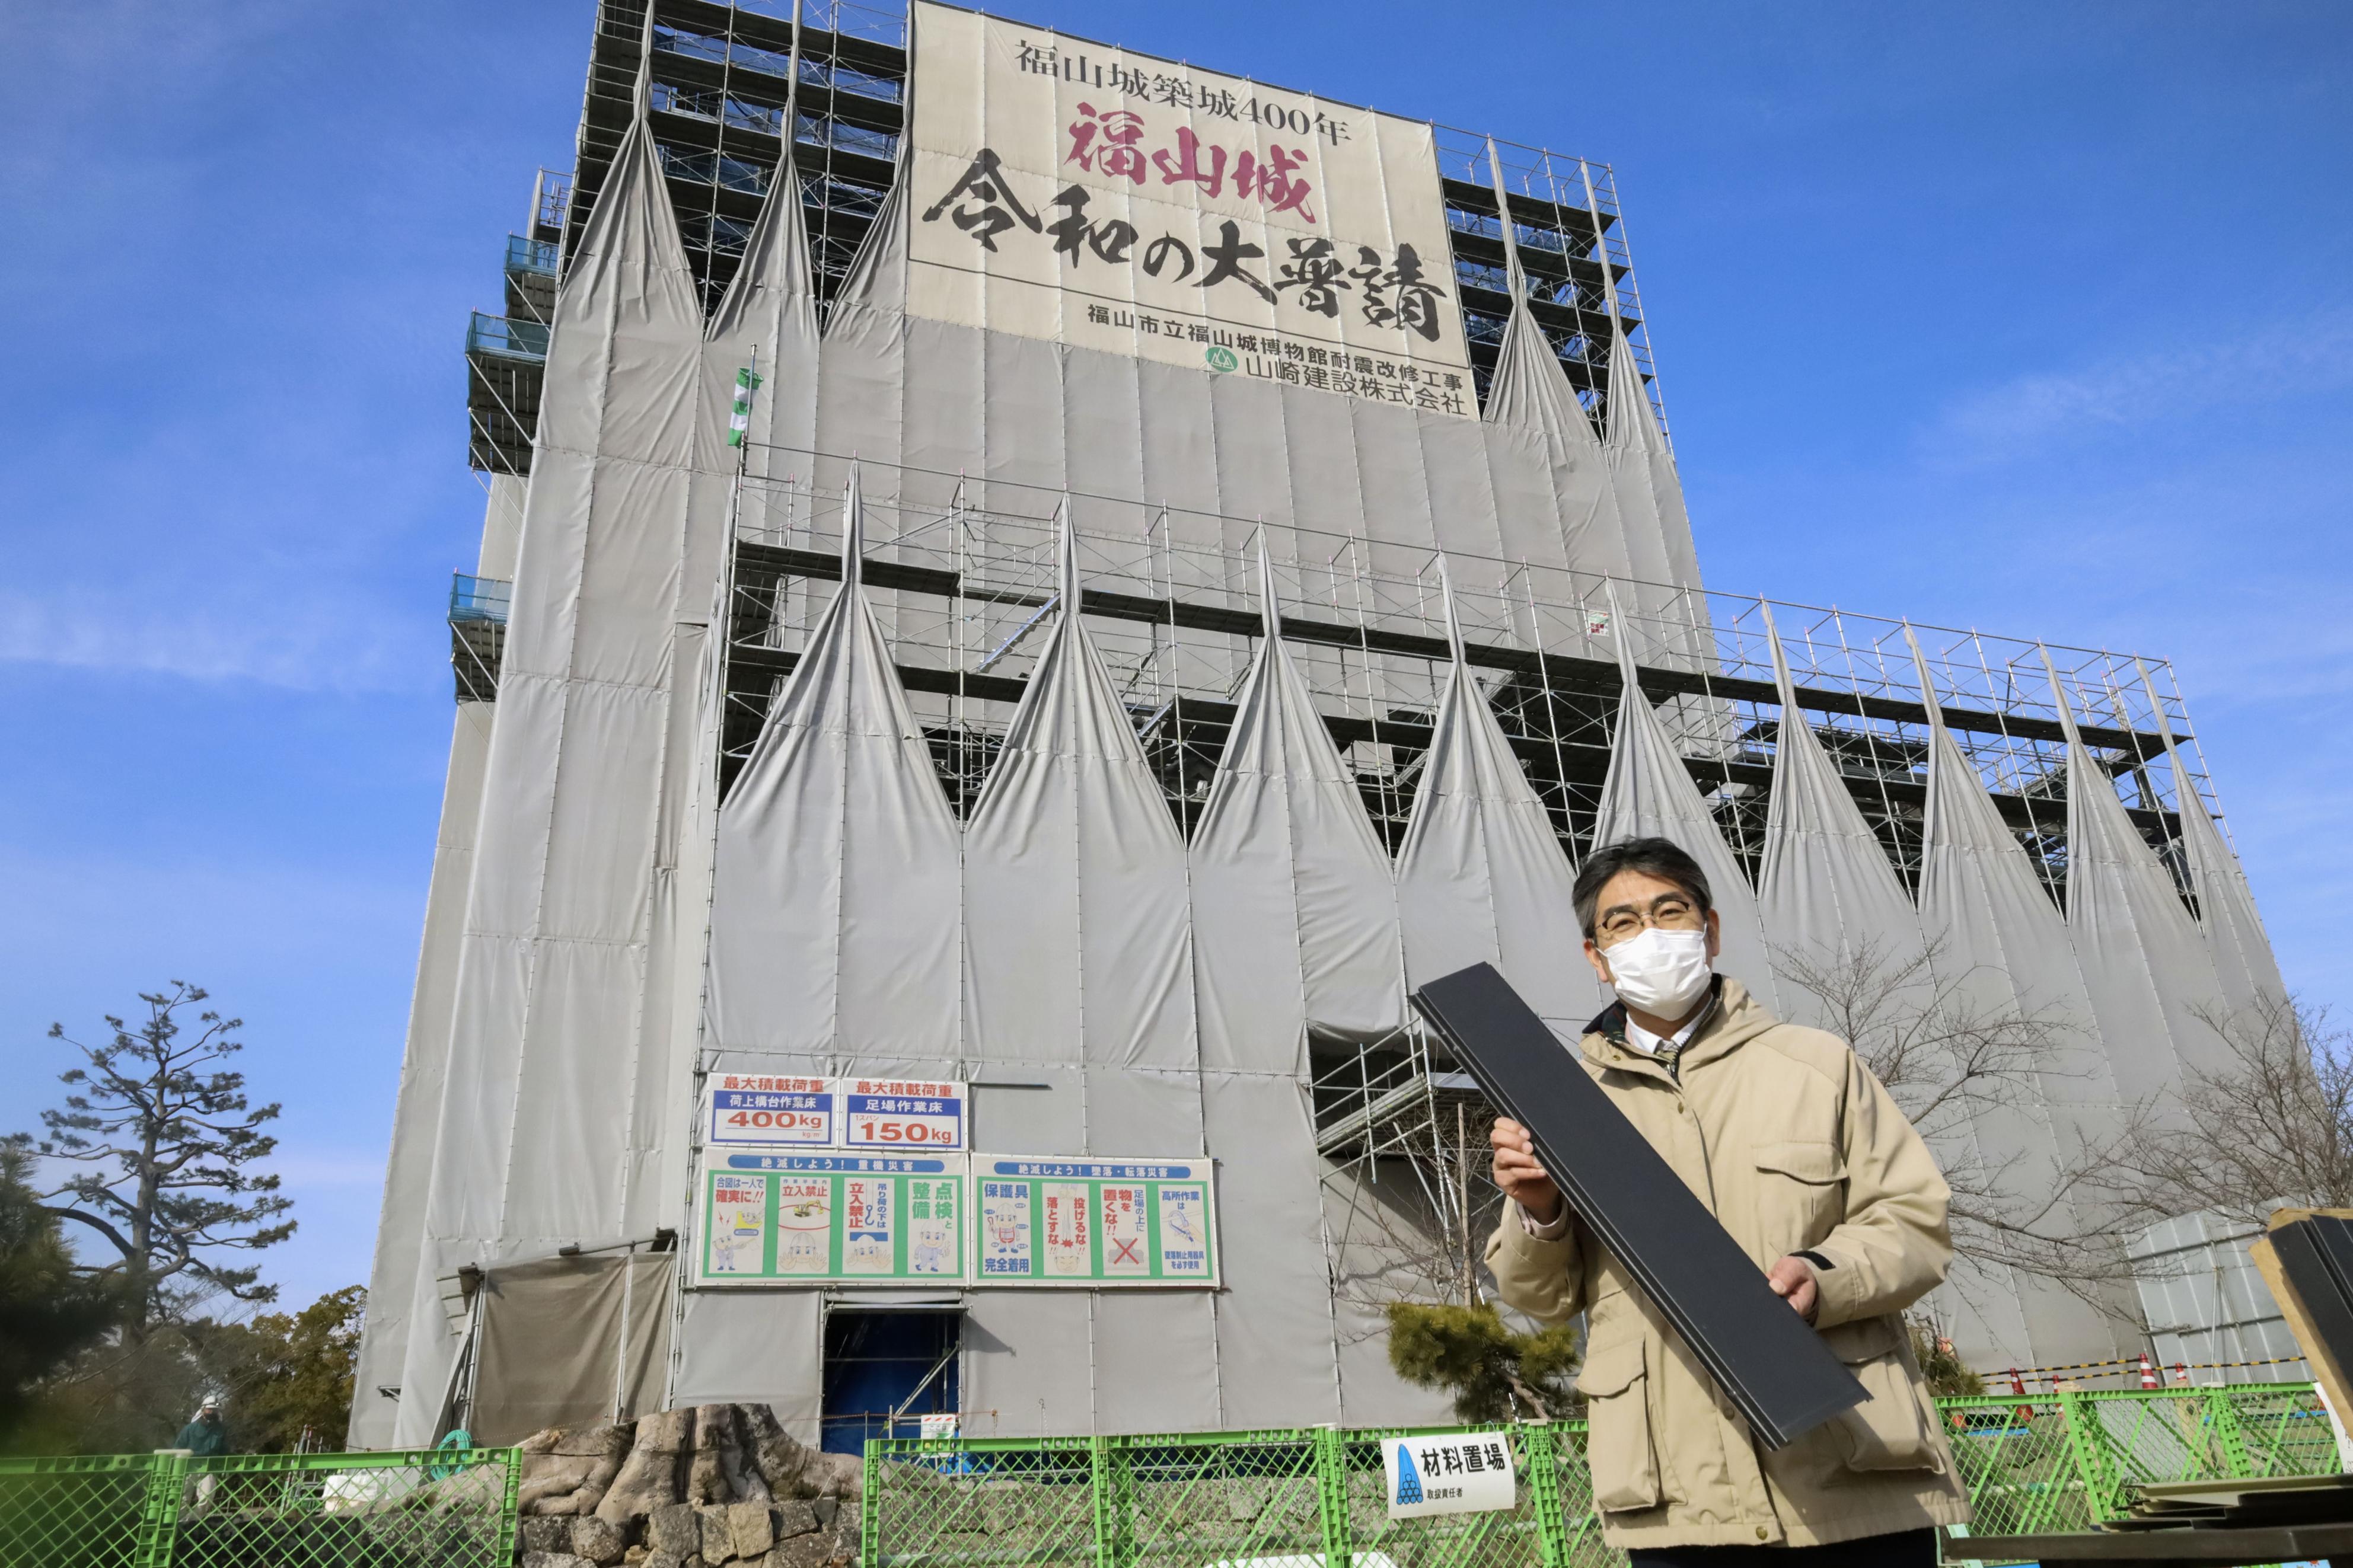 鉄板張り天守を復元中 広島・福山城、全国唯一 - 産経ニュース